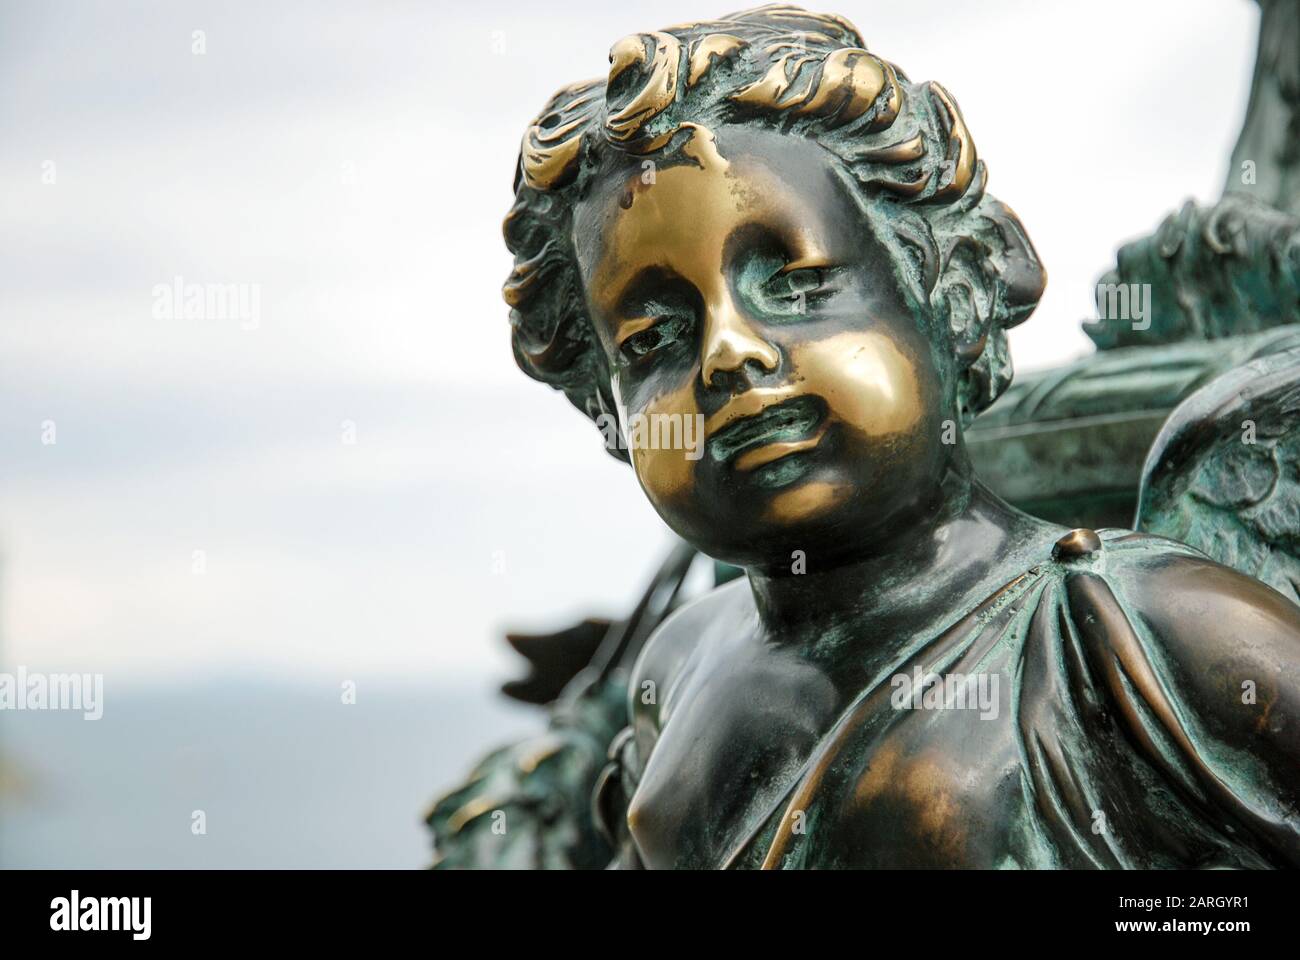 Alte oxidierte Bronzestatue eines Jungen mit polierten Flecken auf seinem Gesicht als Symbol für Hautkrankheit, Pathologie oder Zustand wie Vitiligo oder Psoriasis Stockfoto